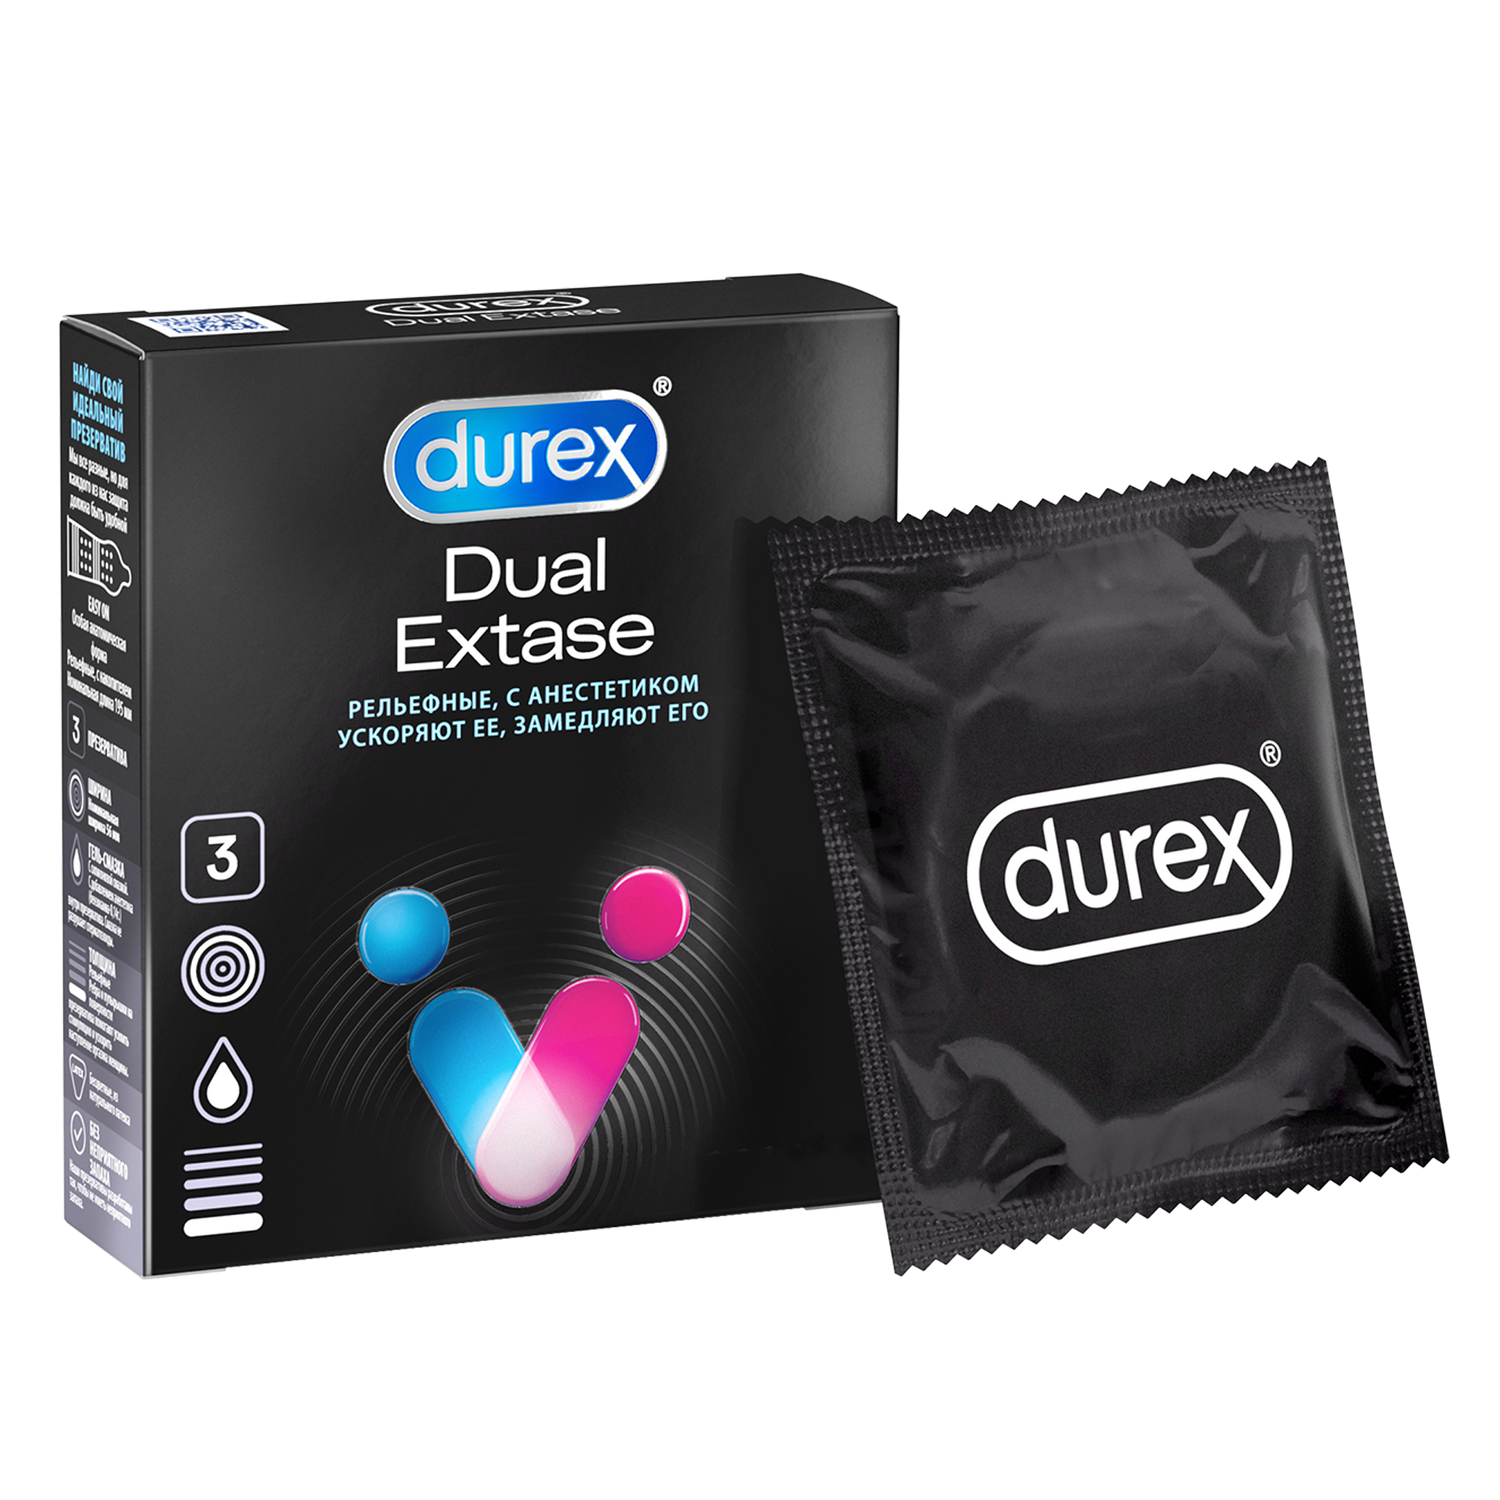 Презервативы Durex Dual Extase, рельефные с анестетиком, 3 шт.